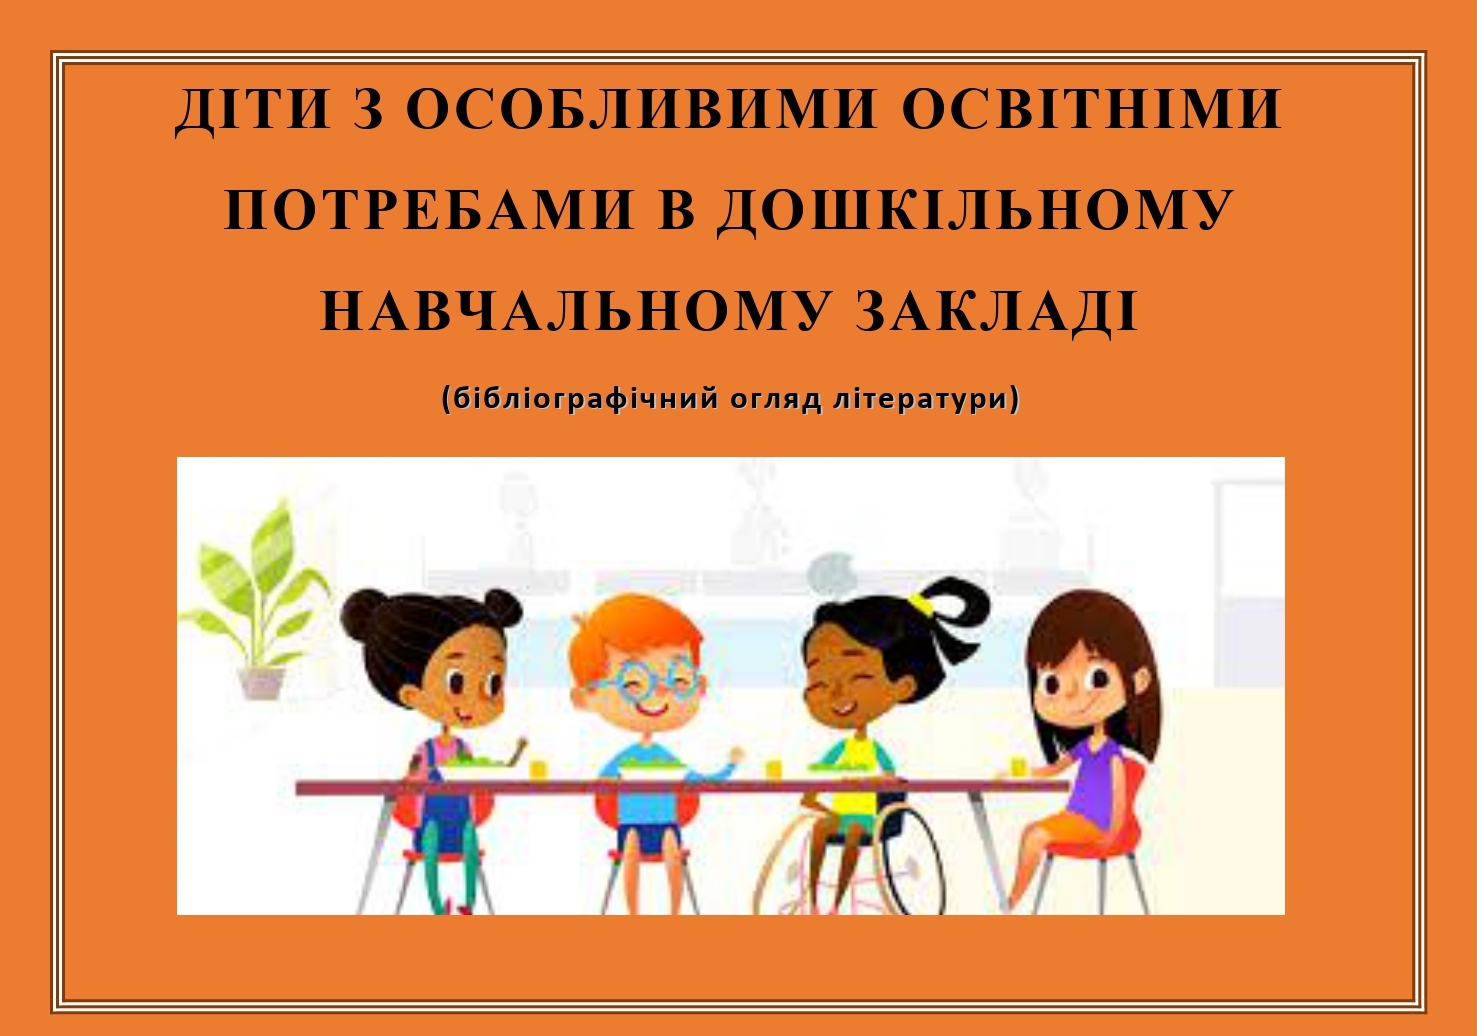 Діти з особливими освітніми потребами в дошкільному навчальному закладі pages to jpg 0001